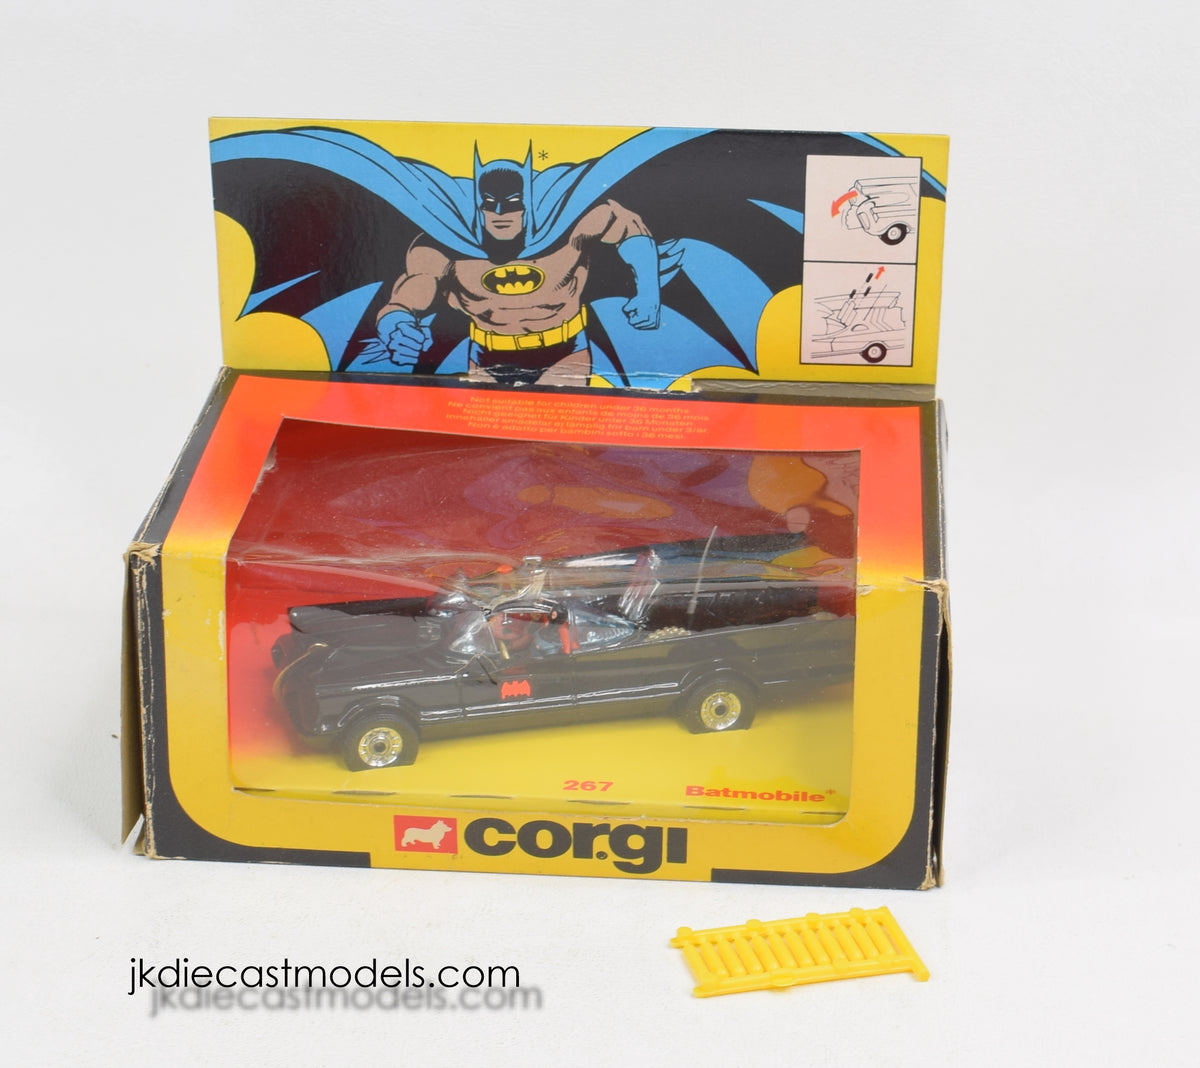 Corgi toys 267 Batmobile Virtually Mint/Boxed ''The Winchester Collection''